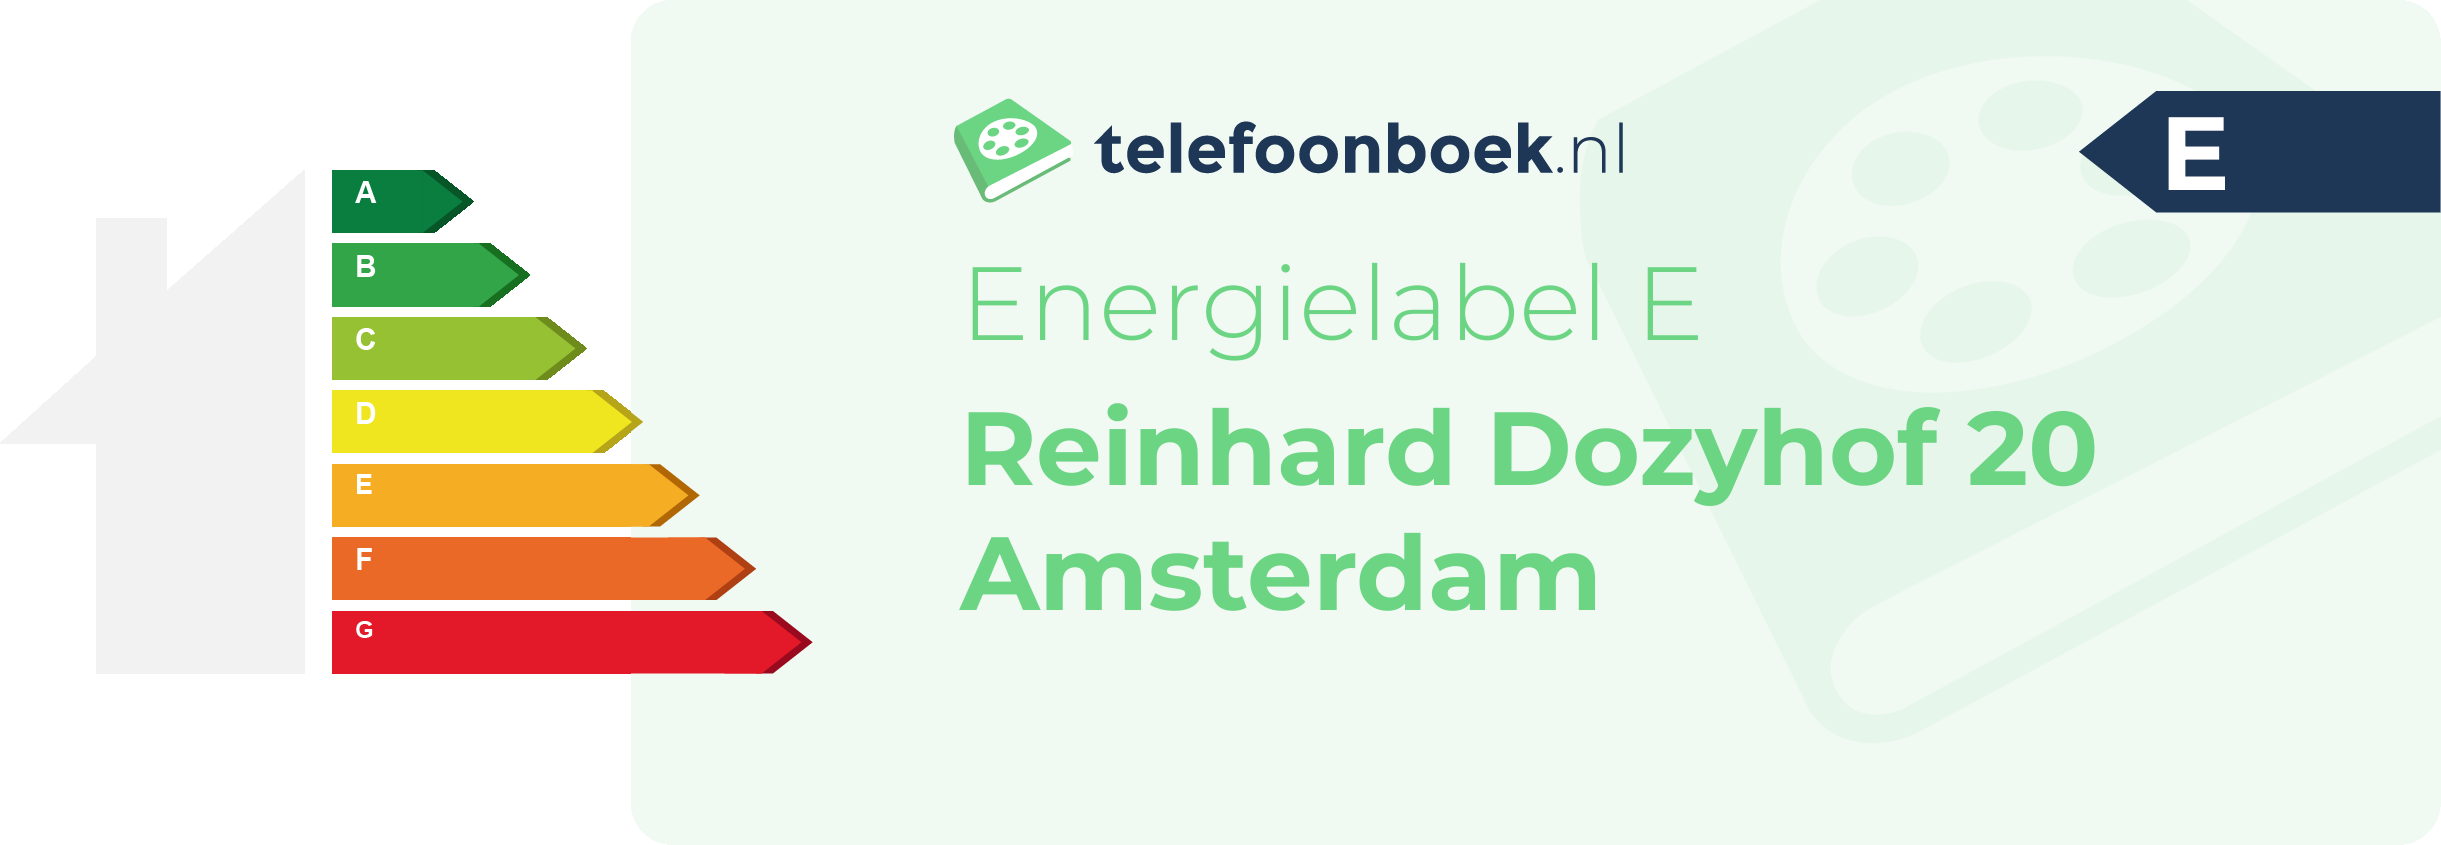 Energielabel Reinhard Dozyhof 20 Amsterdam